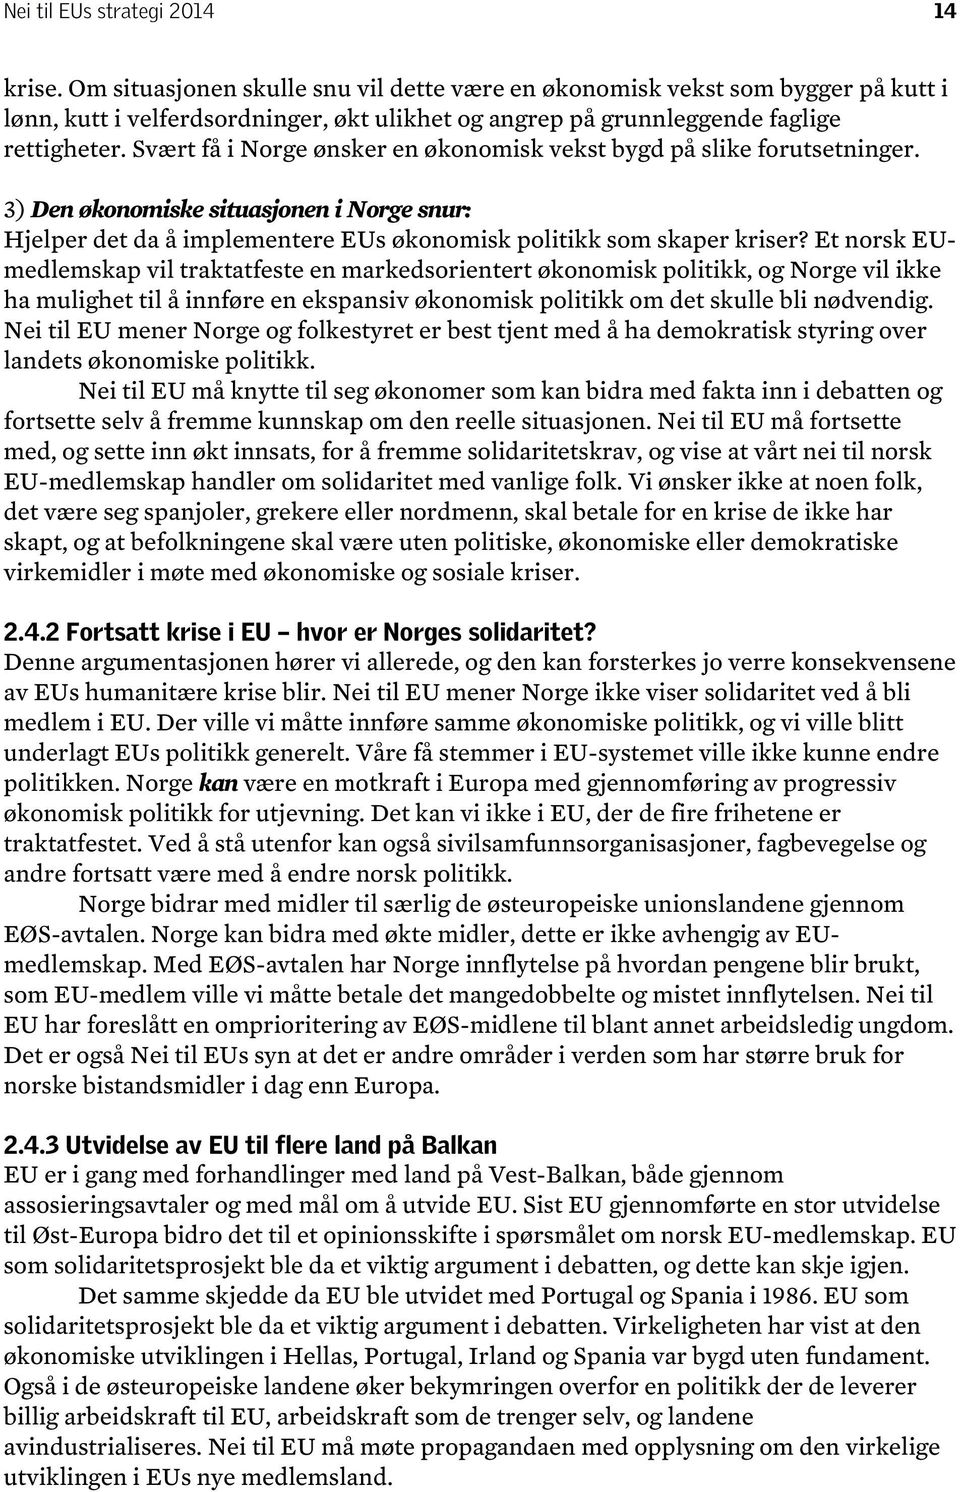 Svært få i Norge ønsker en økonomisk vekst bygd på slike forutsetninger. 3) Den økonomiske situasjonen i Norge snur: Hjelper det da å implementere EUs økonomisk politikk som skaper kriser?